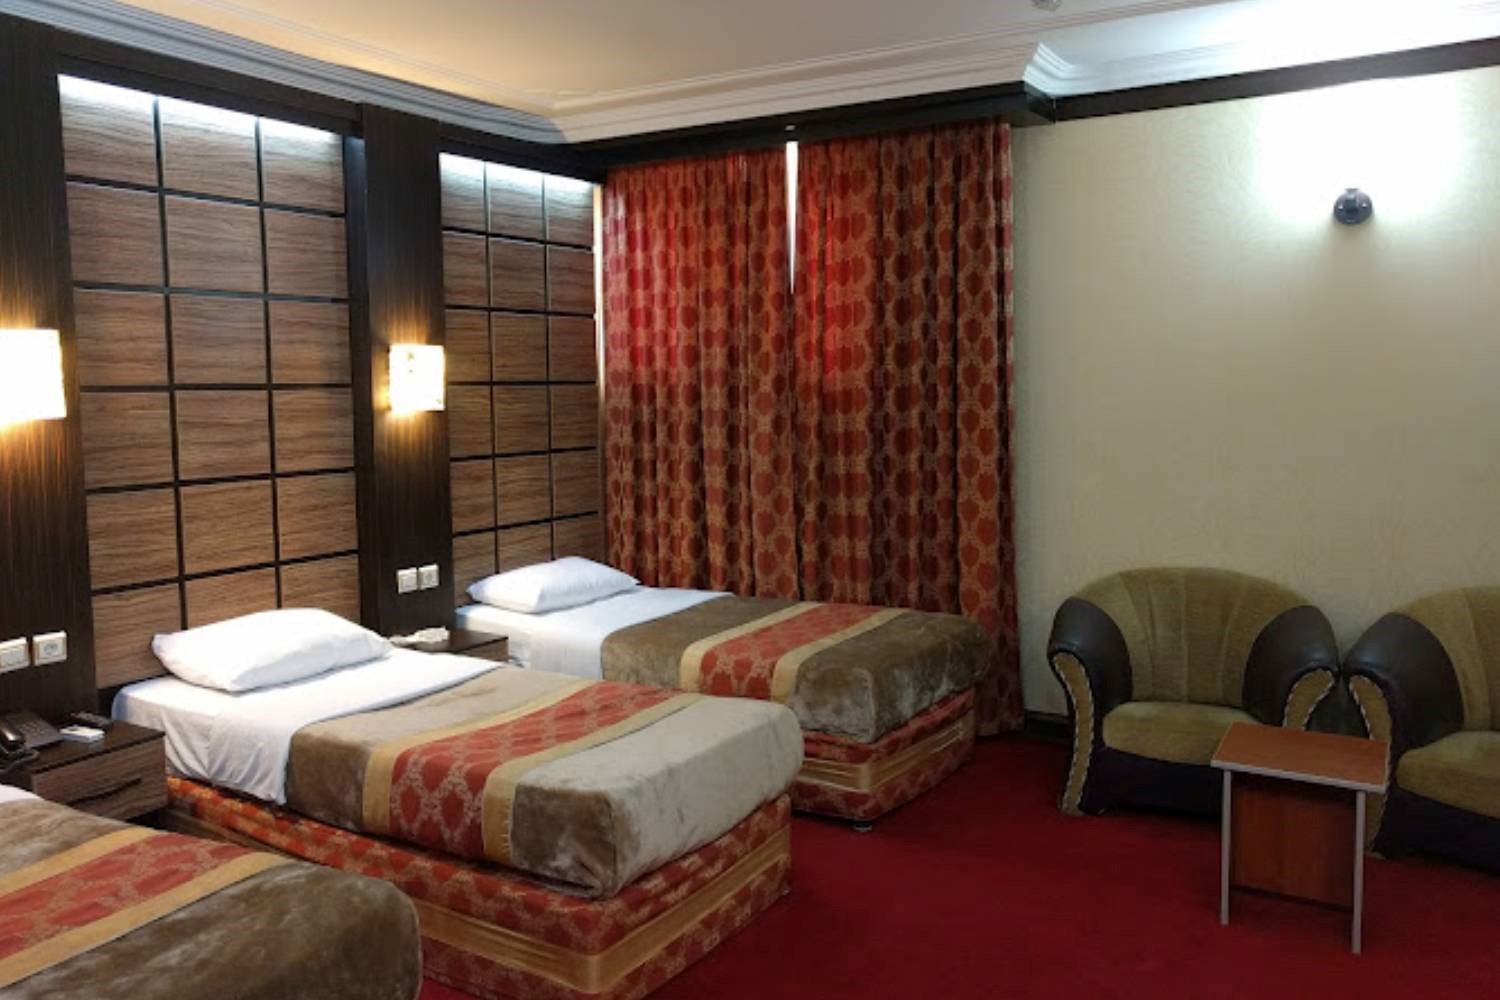 هتل پرشیا اهواز؛ یکی از بهترین هتل های شهر اهواز 